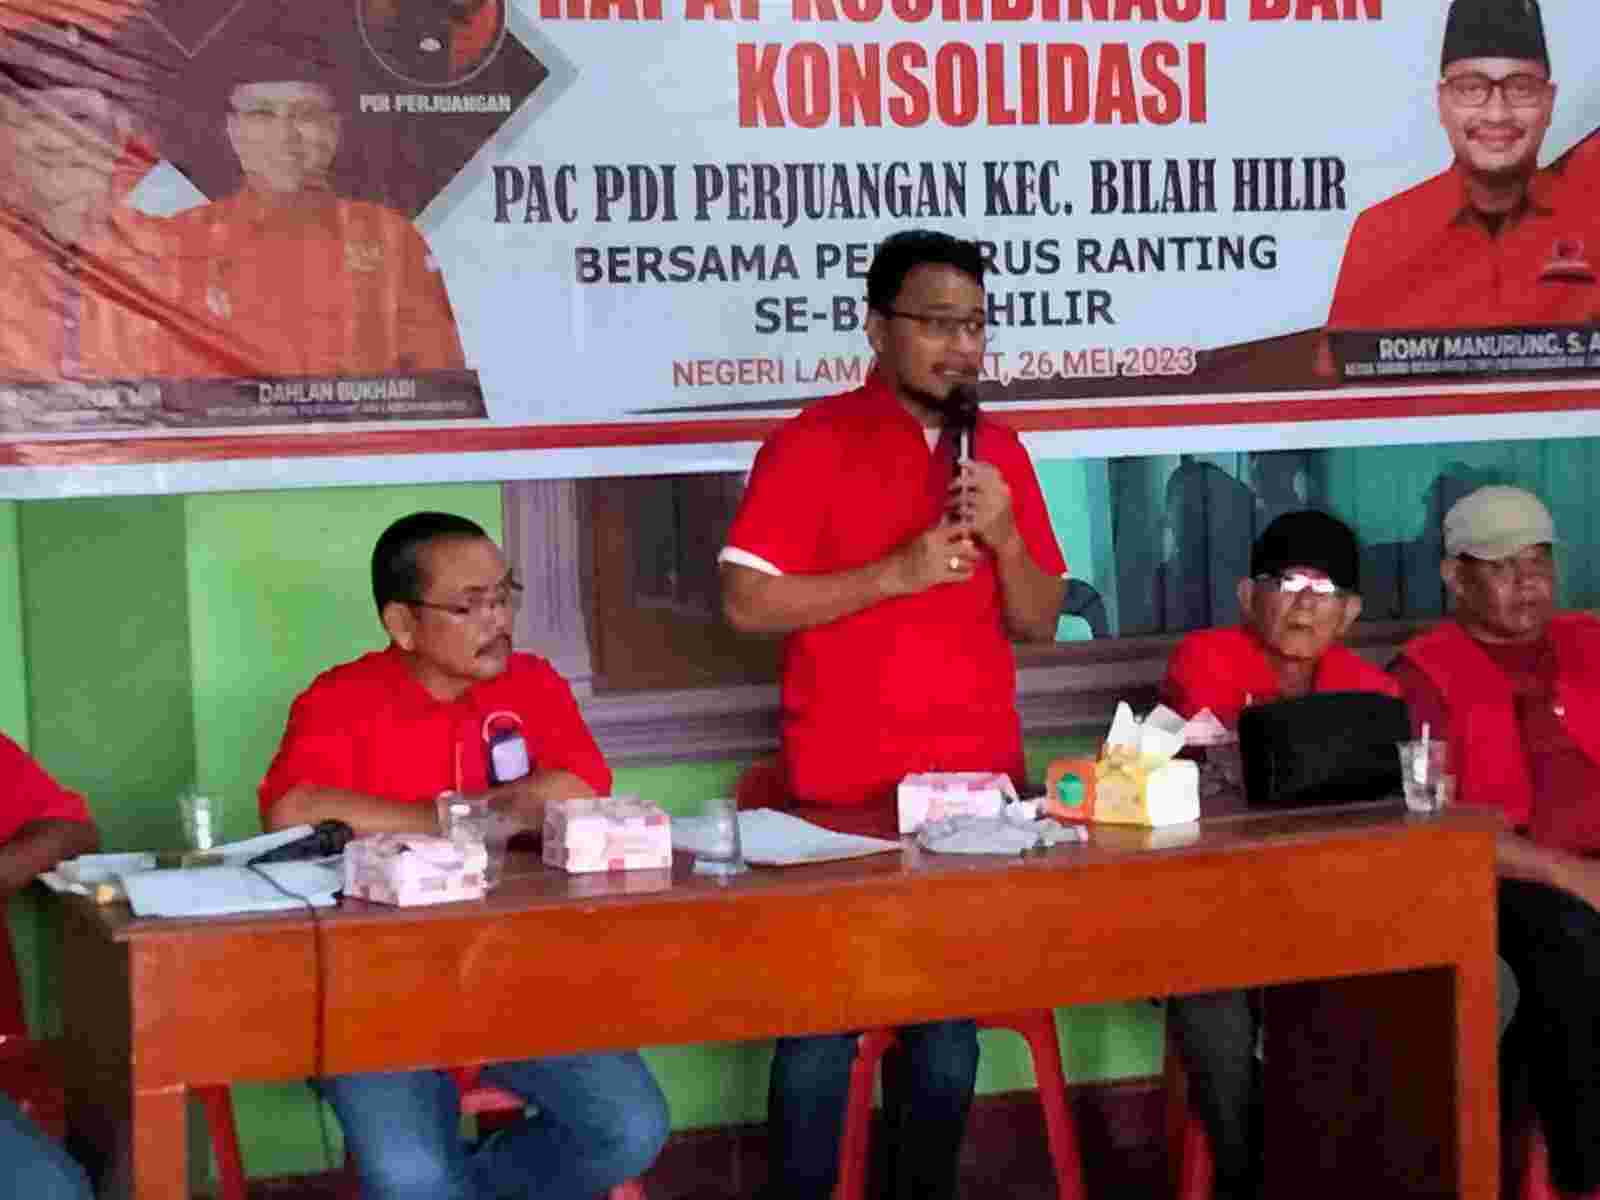 PAC PDIP Bilah Hilir Gelar Konsolidasi, Romy Manurung: Militansi Harus Dijaga